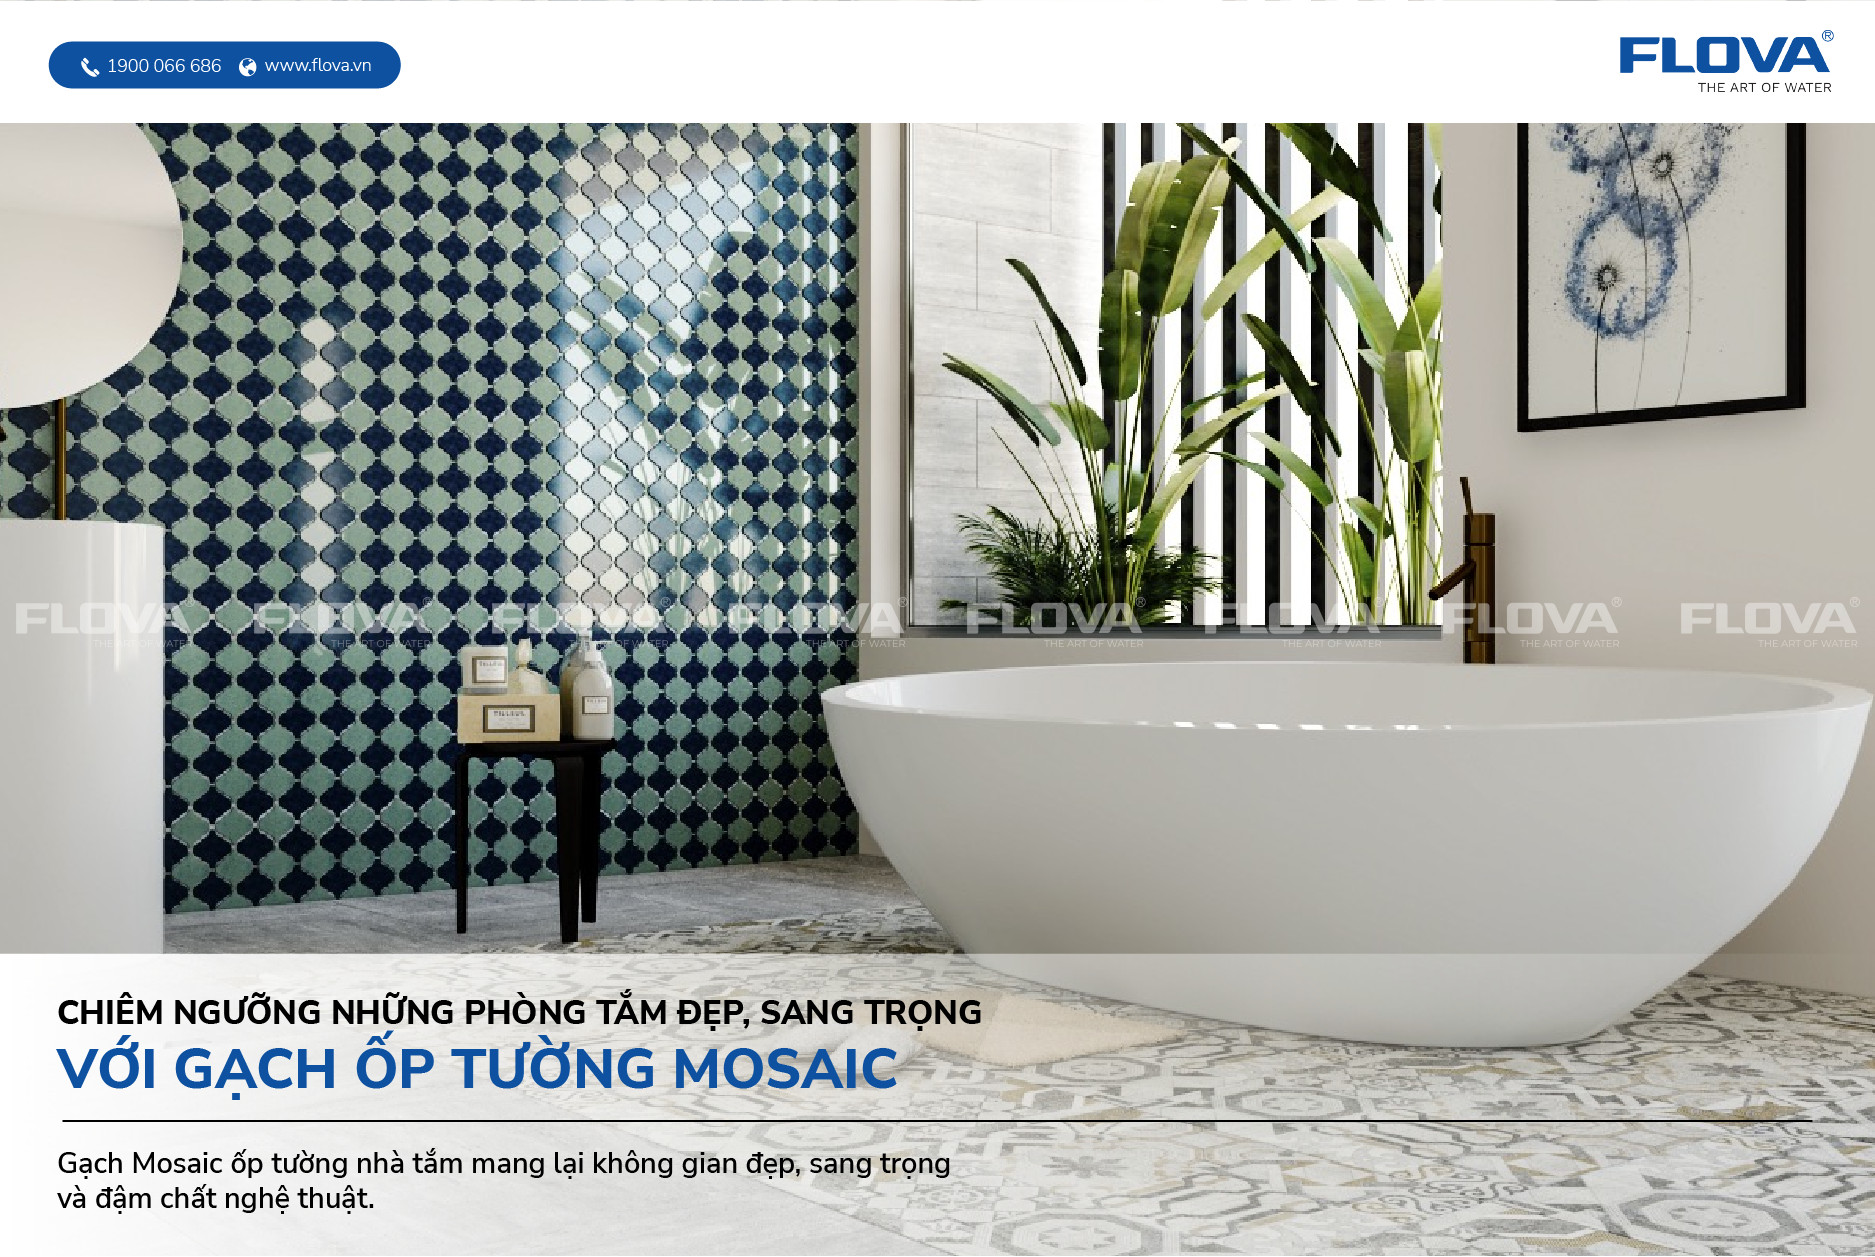 Gạch Mosaic là một trong những phương tiện trang trí tuyệt vời để làm mới không gian phòng tắm của bạn. Sử dụng gạch Mosaic, bạn có thể tạo ra những hình ảnh và màu sắc độc đáo, đẹp và phù hợp với phong cách của bạn. Hãy xem hình ảnh để tìm thấy những thiết kế phòng tắm tuyệt vời với gạch Mosaic.